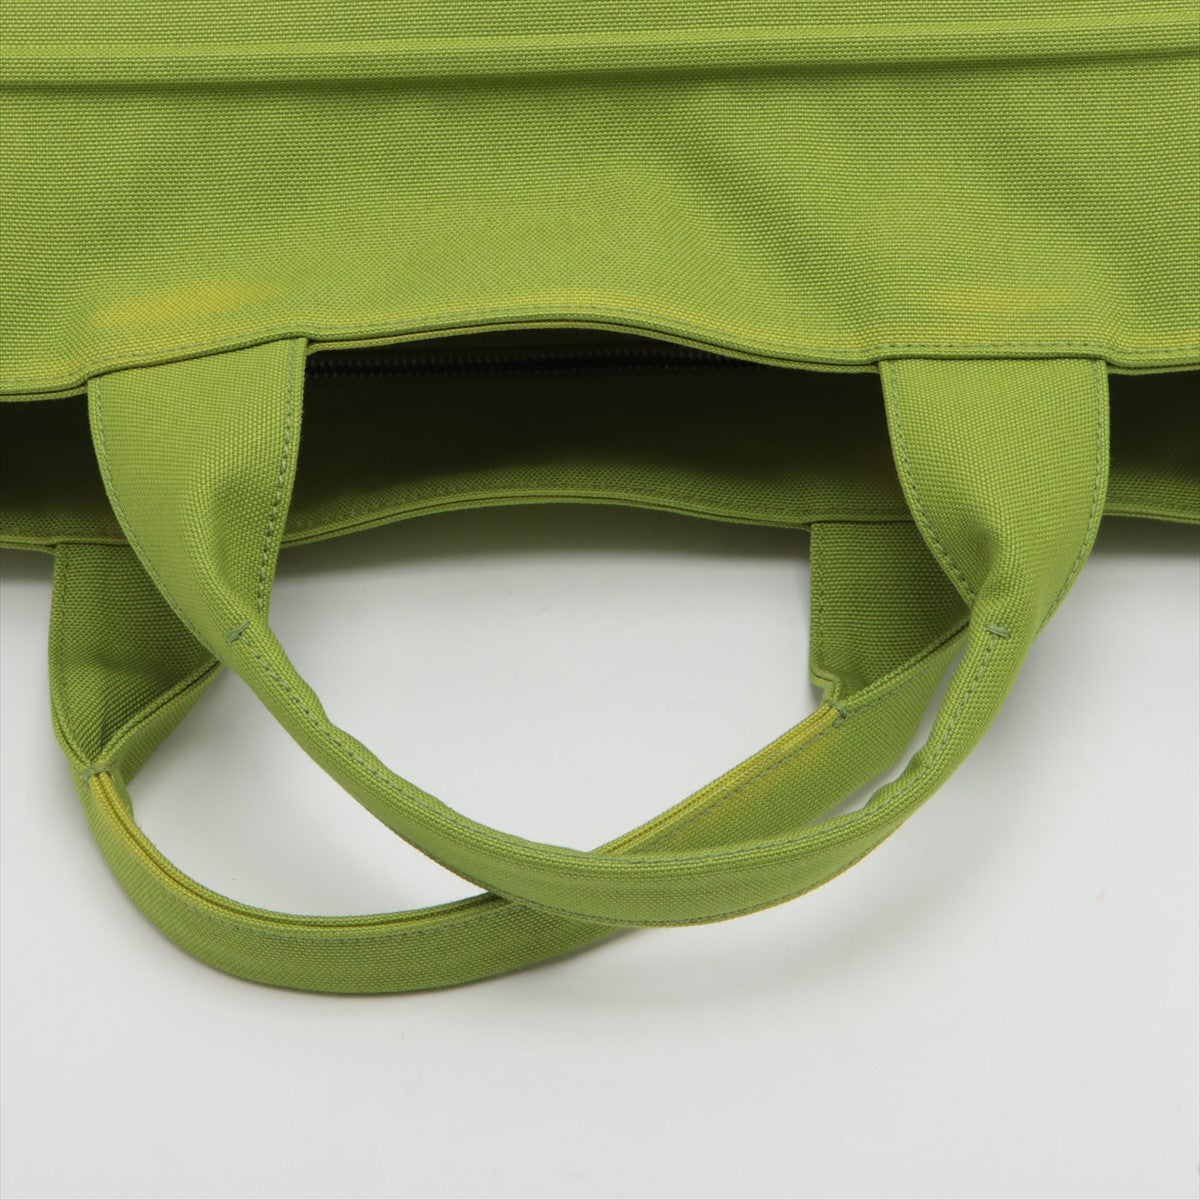 Prada Linen Handbag Green 2VG081